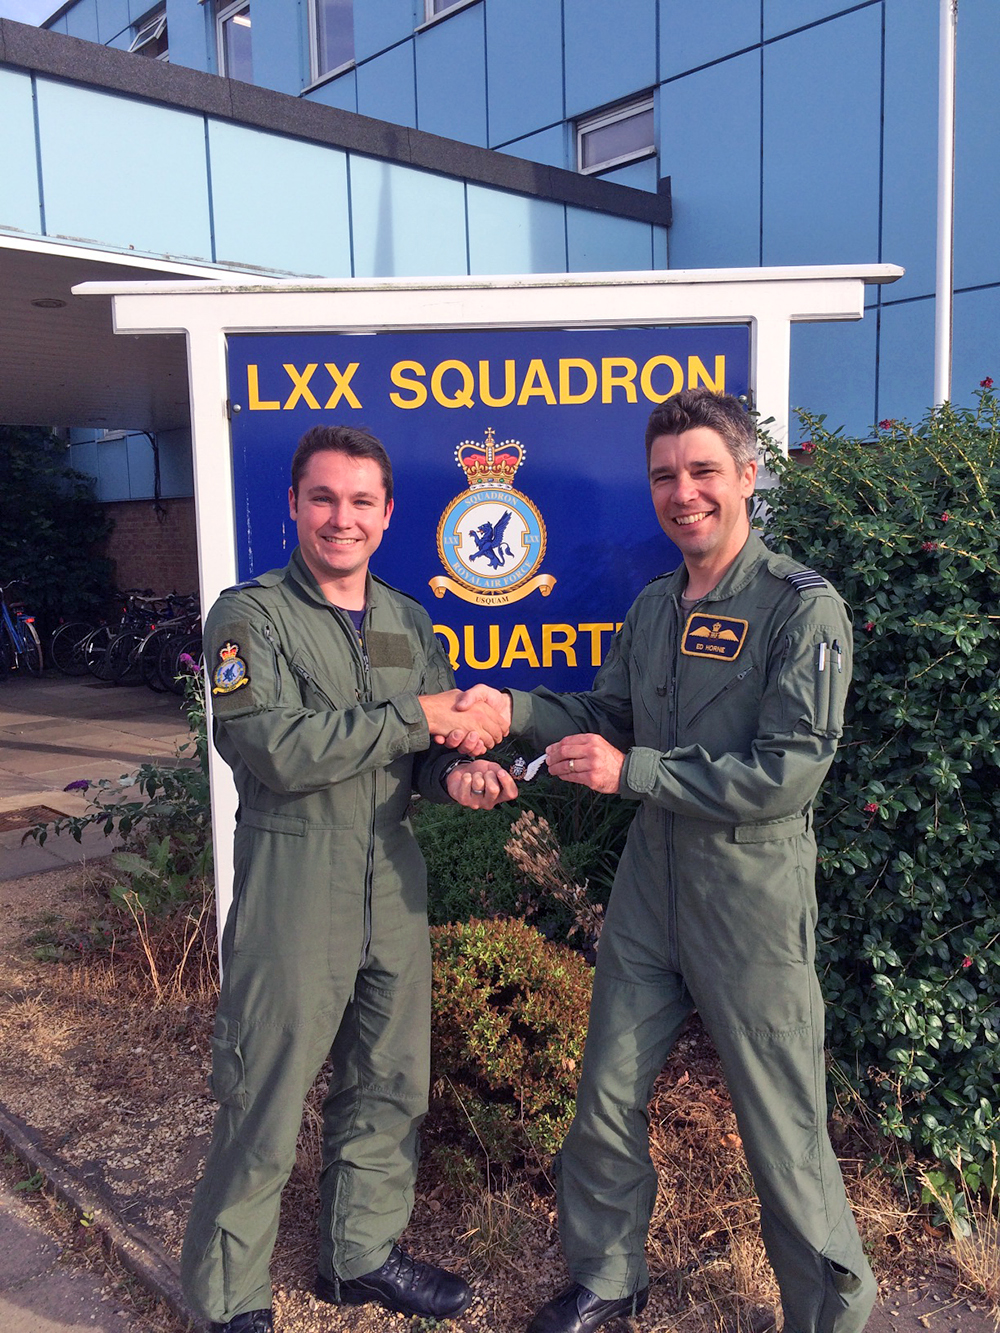 Wing Commander Ed Horne, Officer Commanding LXX Squadron, presenting Sergeant Greg Stevens with his Loadmaster brevet